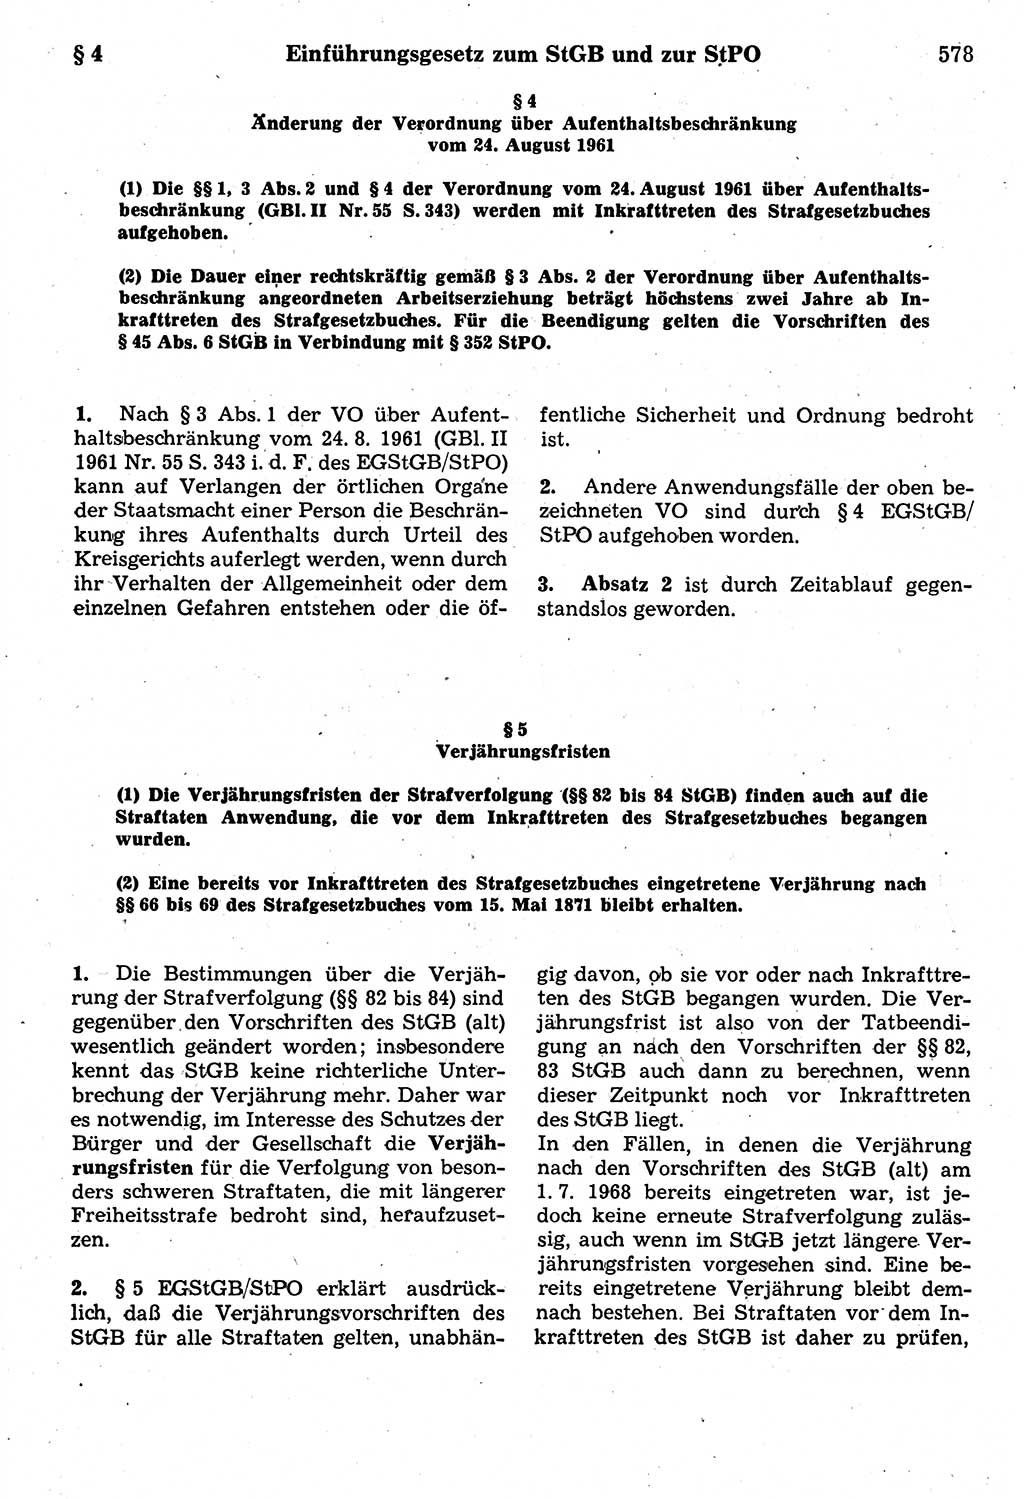 Strafrecht der Deutschen Demokratischen Republik (DDR), Kommentar zum Strafgesetzbuch (StGB) 1987, Seite 578 (Strafr. DDR Komm. StGB 1987, S. 578)